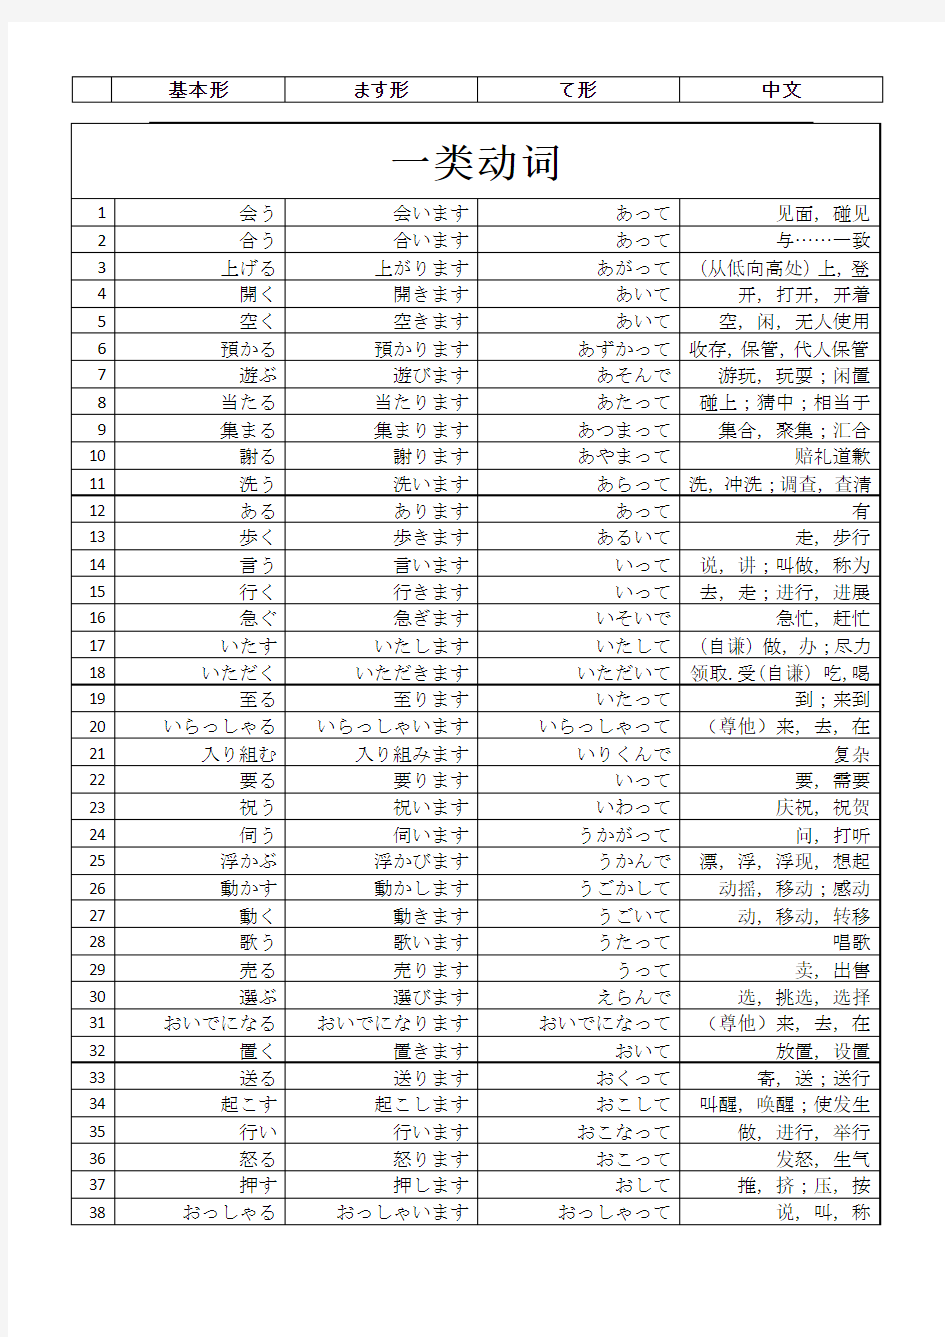 标准日本语 初级上下册 所有动词